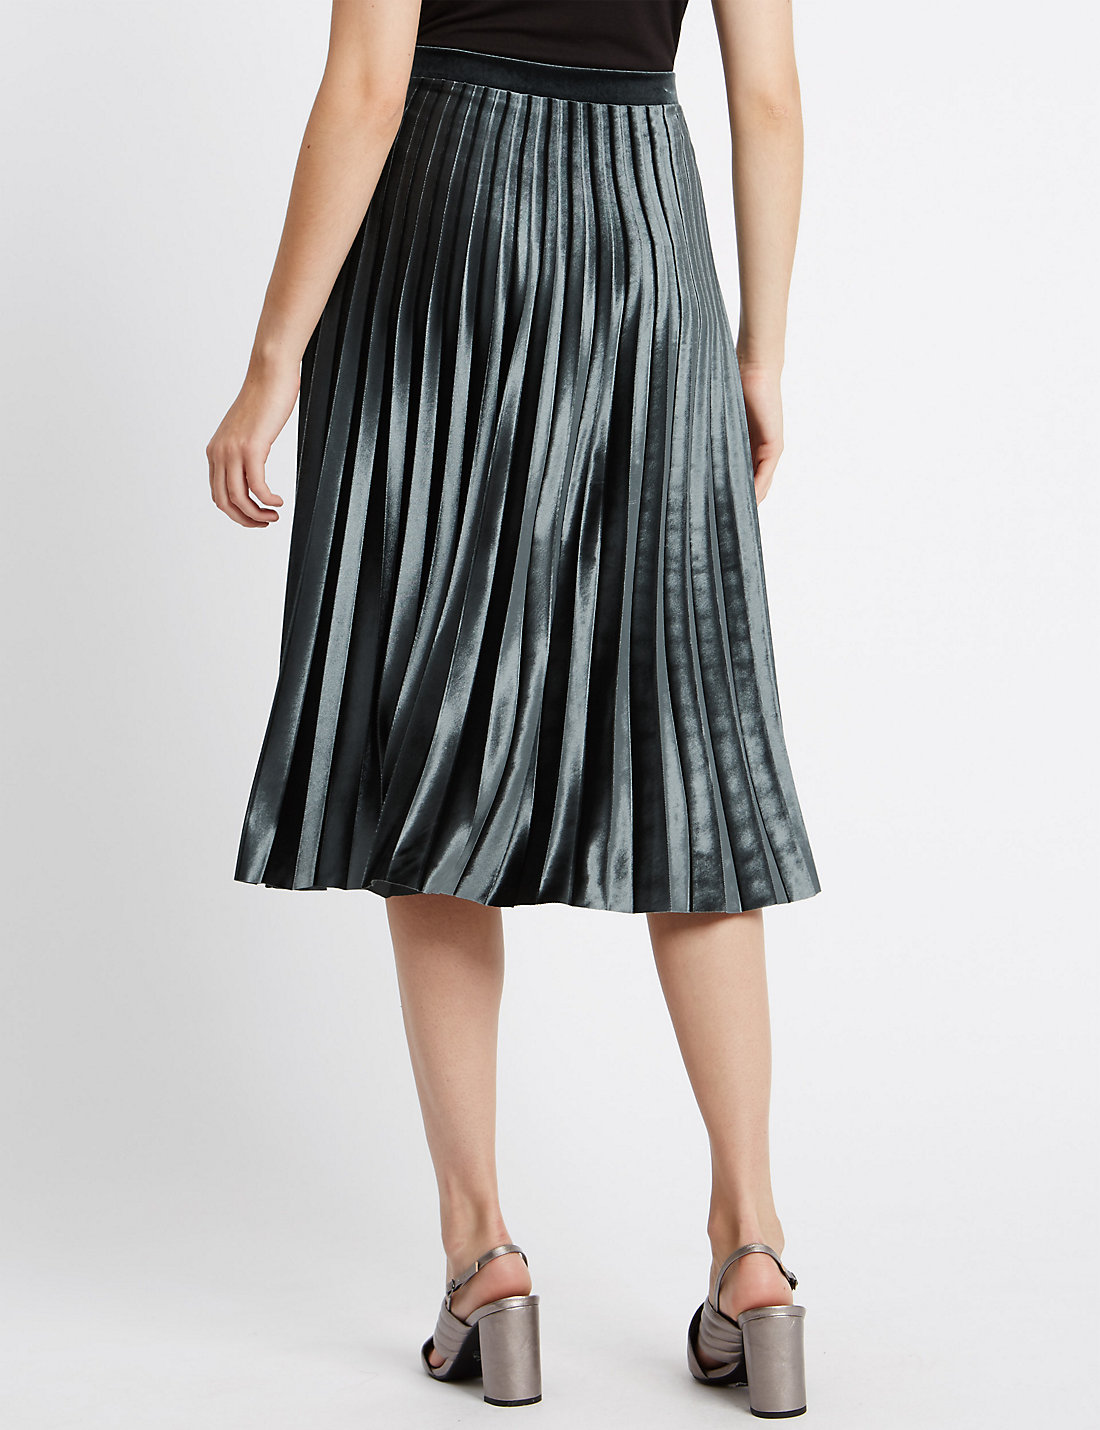 Satchel: M&S Velvet Pleated Skirt